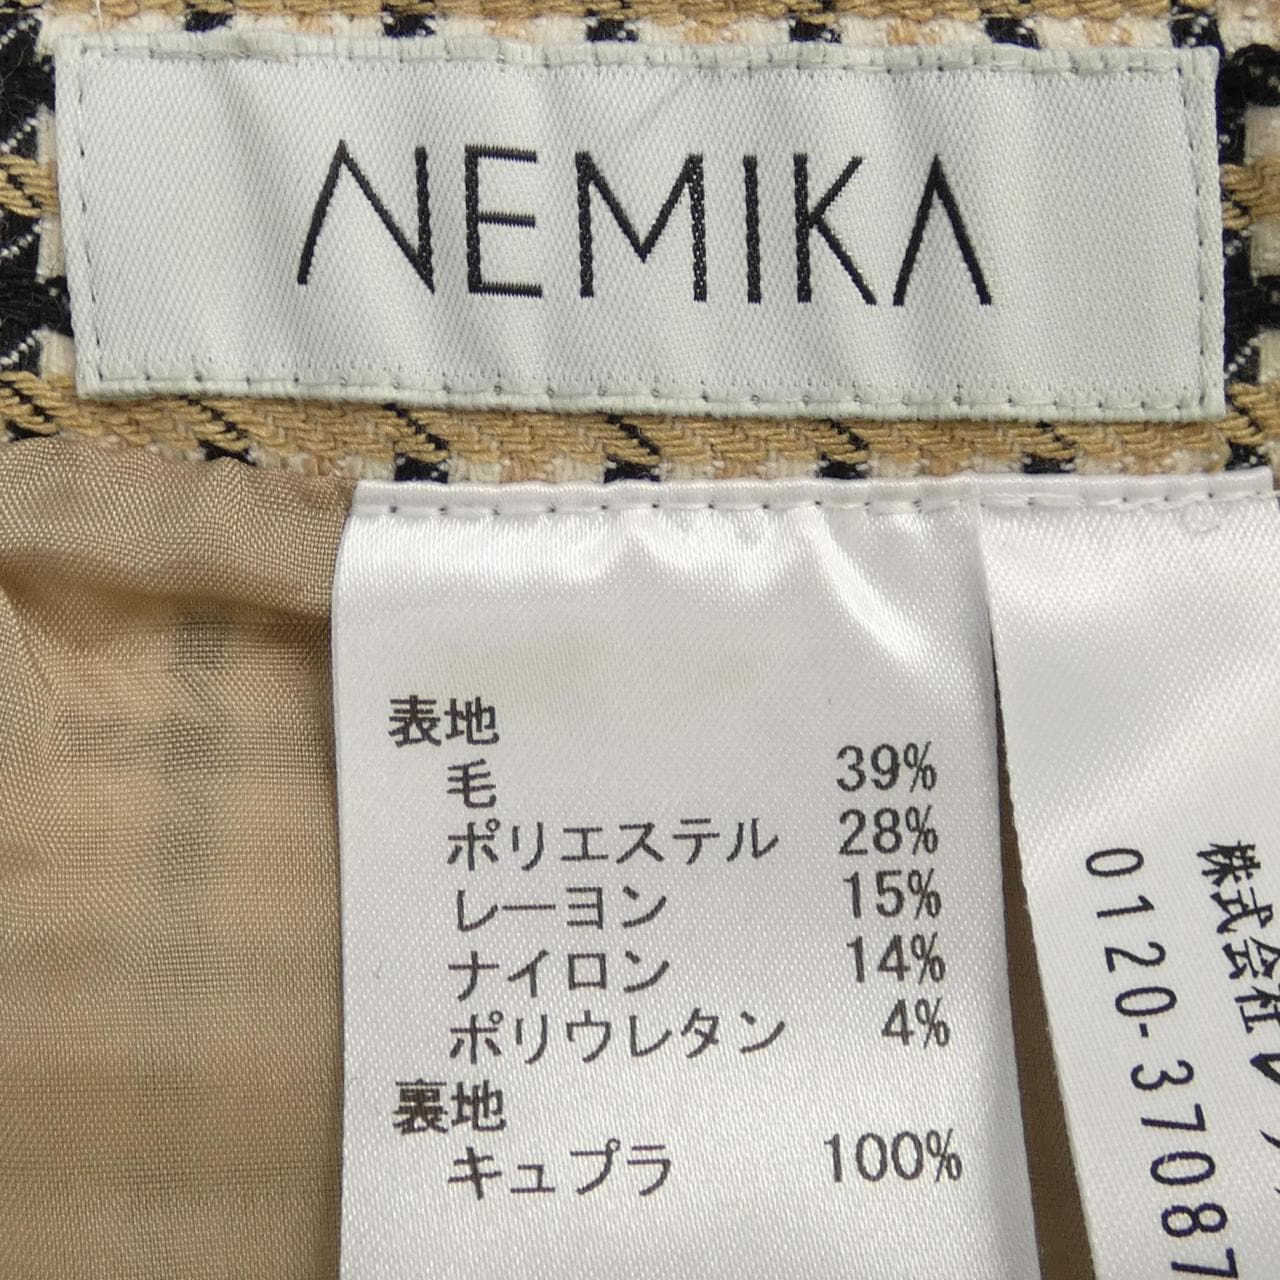 ネミカ NEMIKA スカート